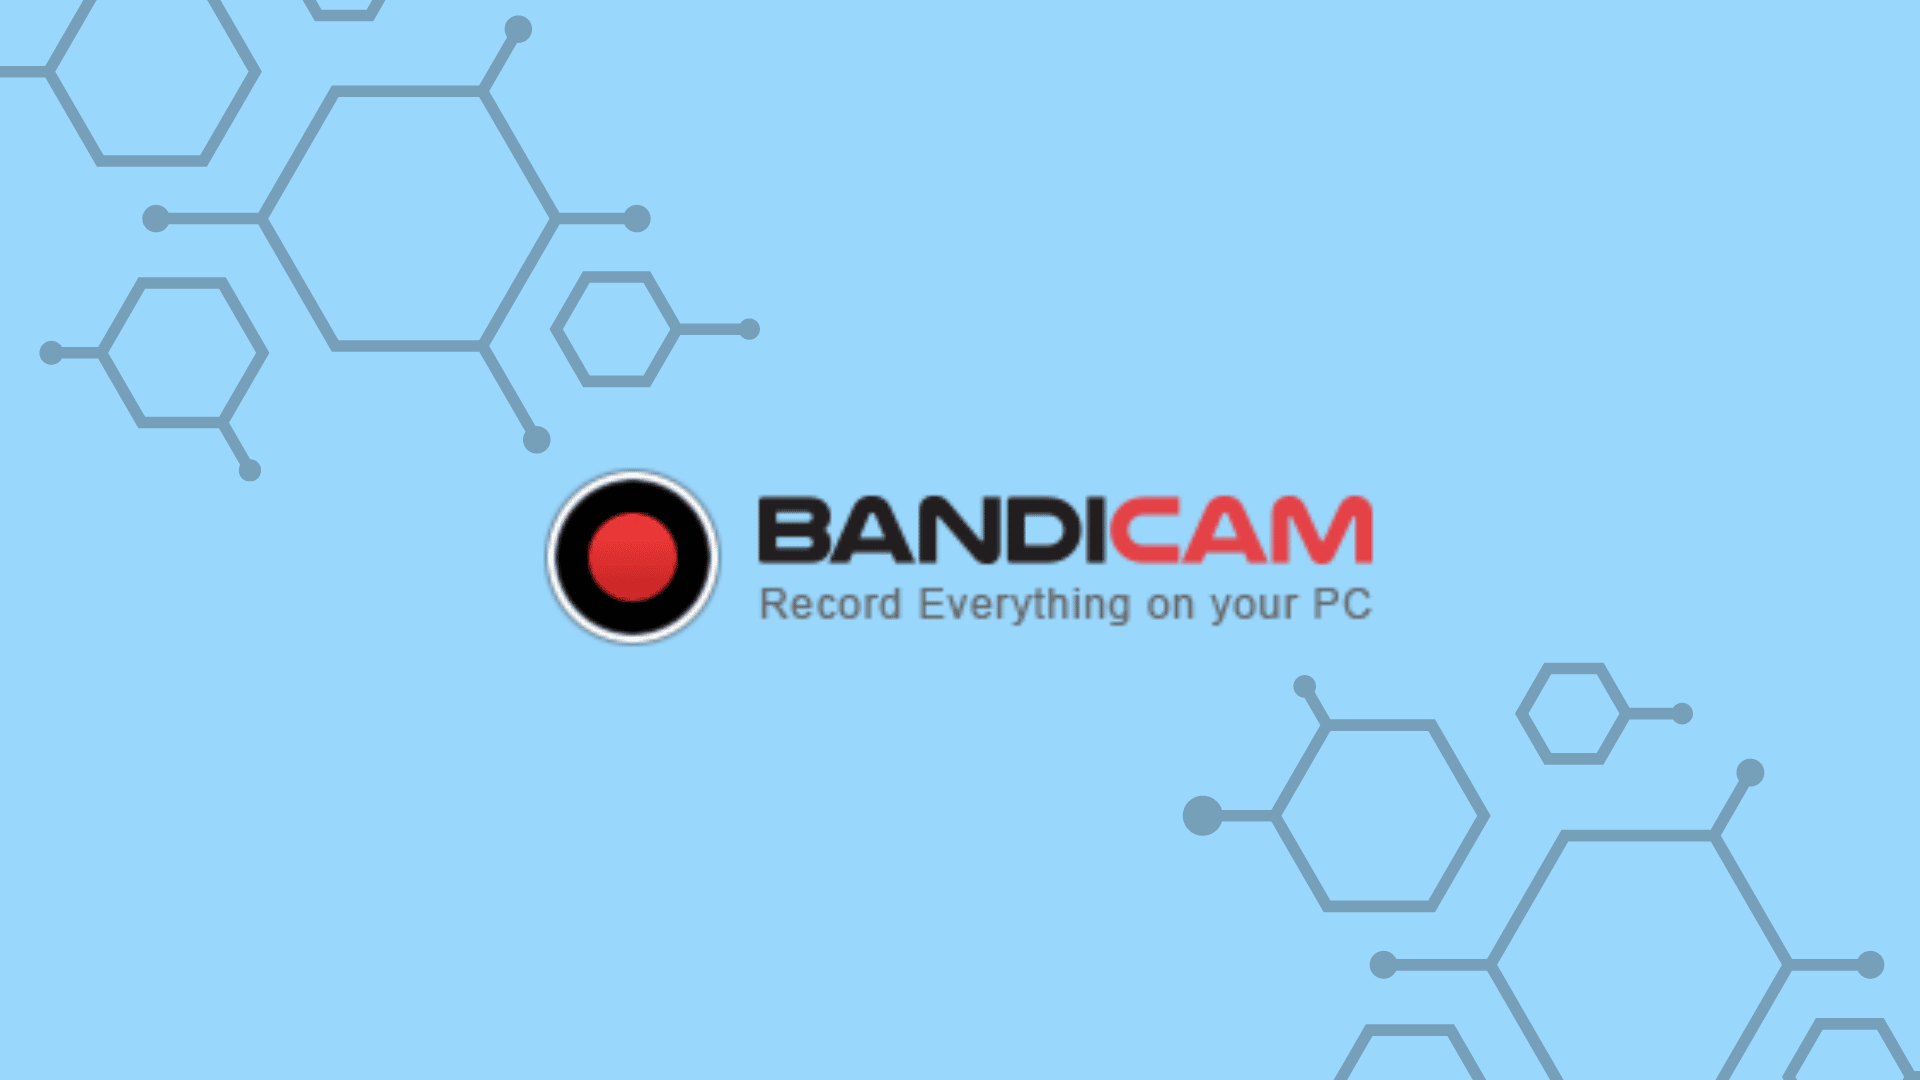 Bandicam Logo